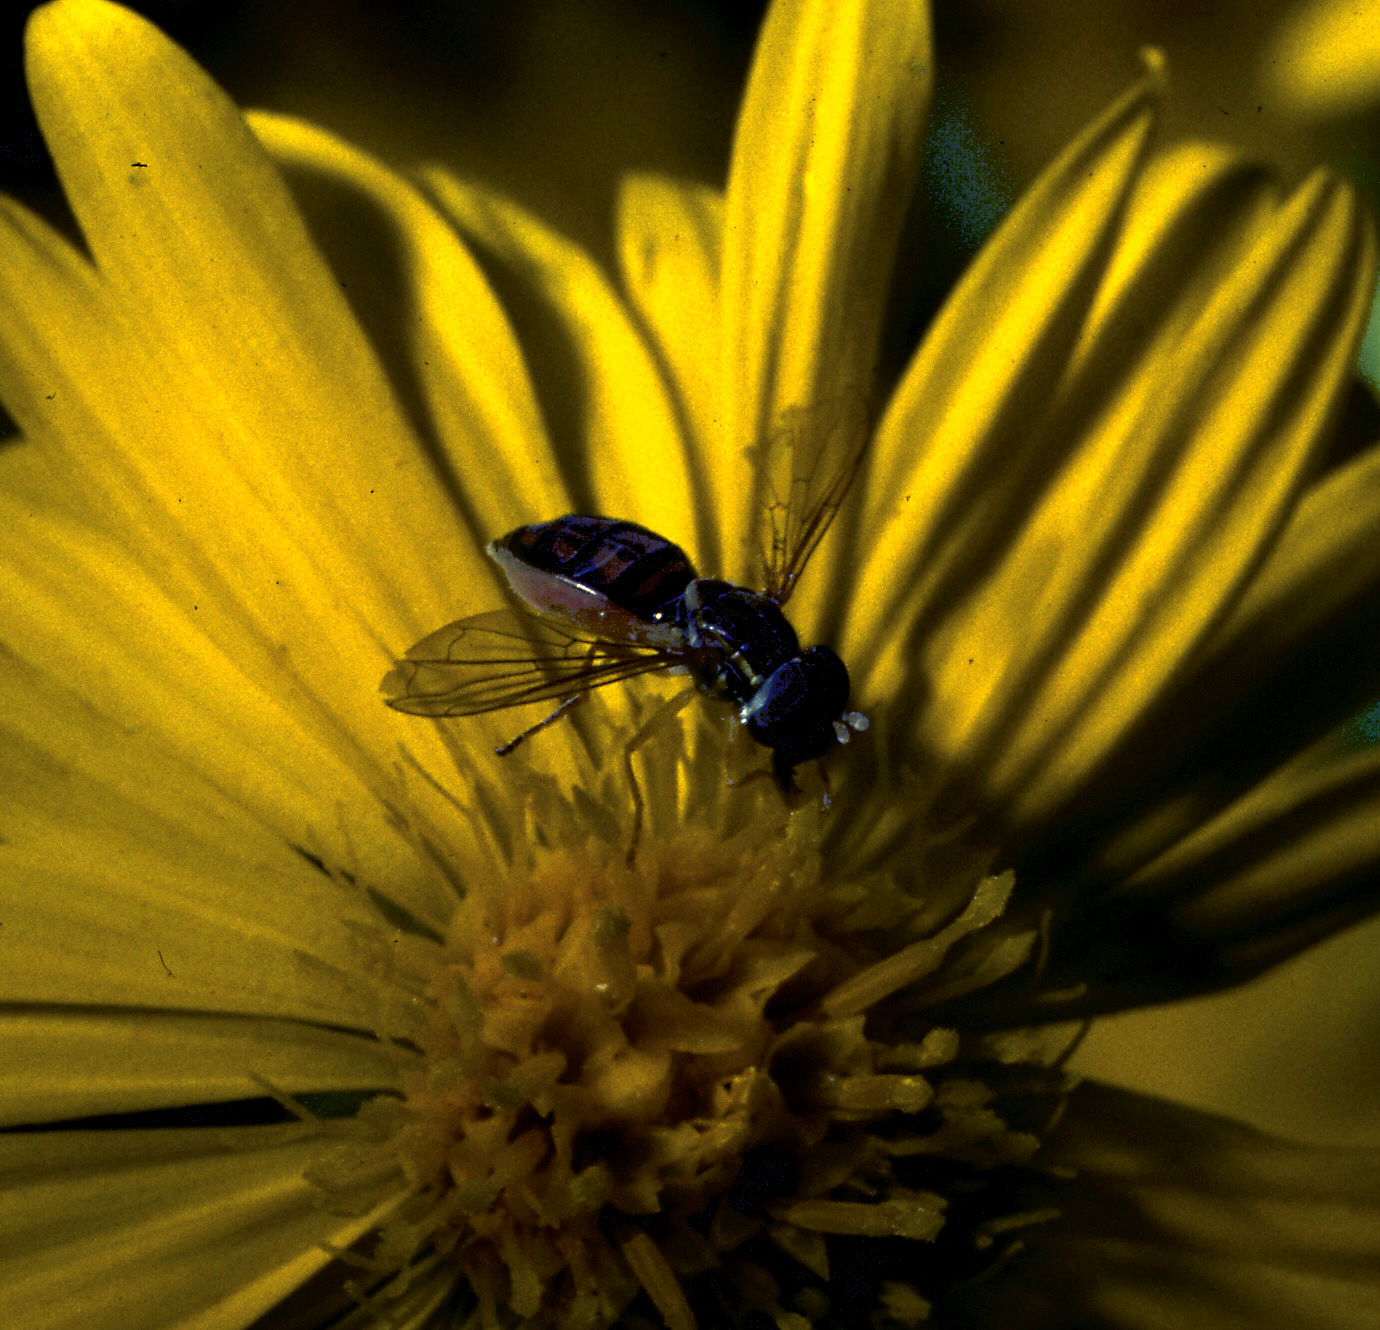 Flower fly